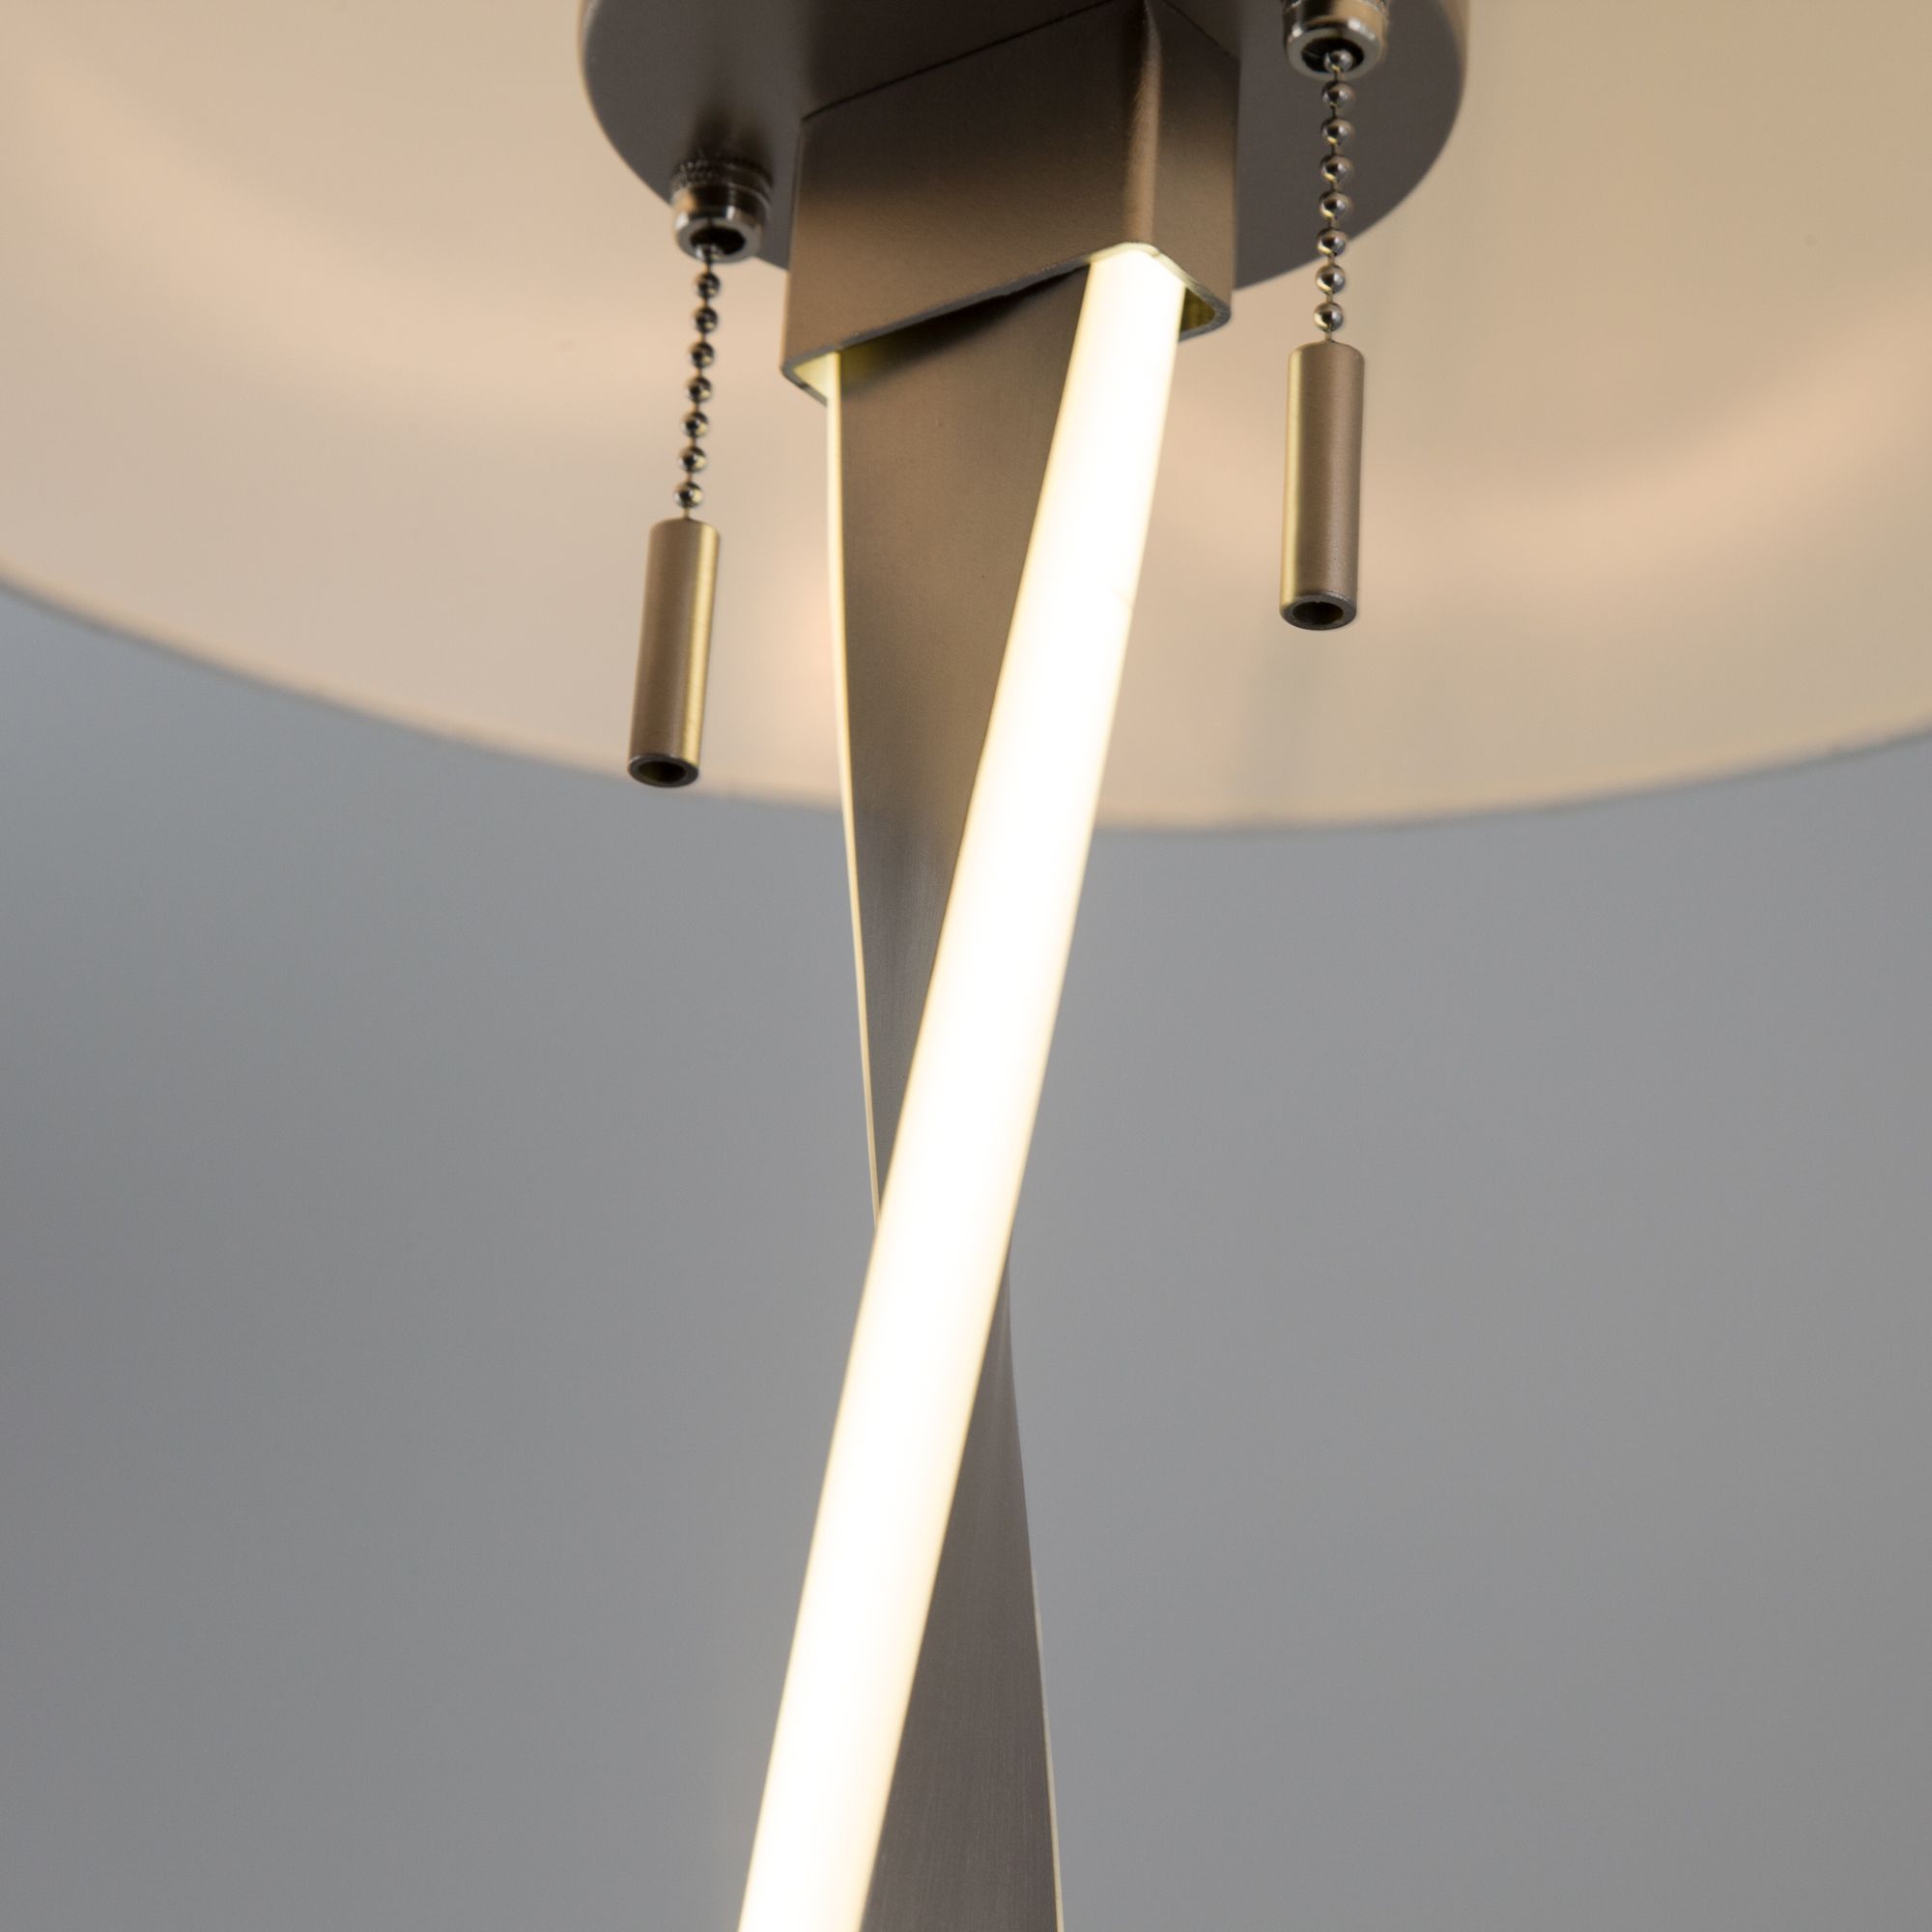 Напольный светодиодный светильник с тканевым абажуром Bogate's Titan 992 белый / никель. Фото 4